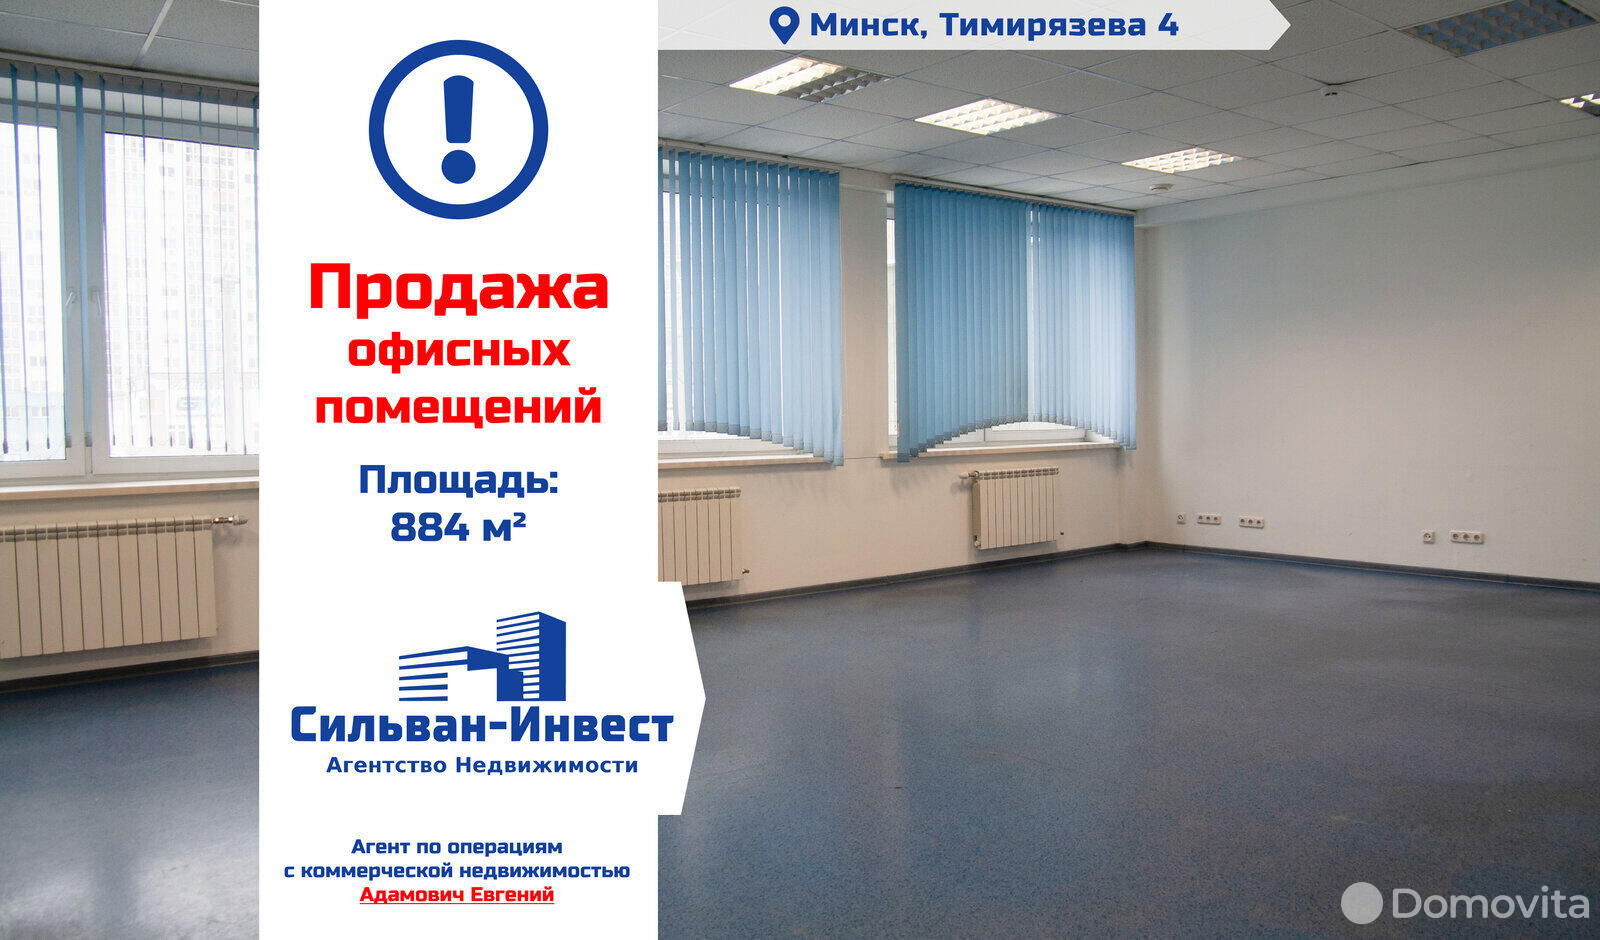 Цена продажи офиса, Минск, ул. Тимирязева, д. 4